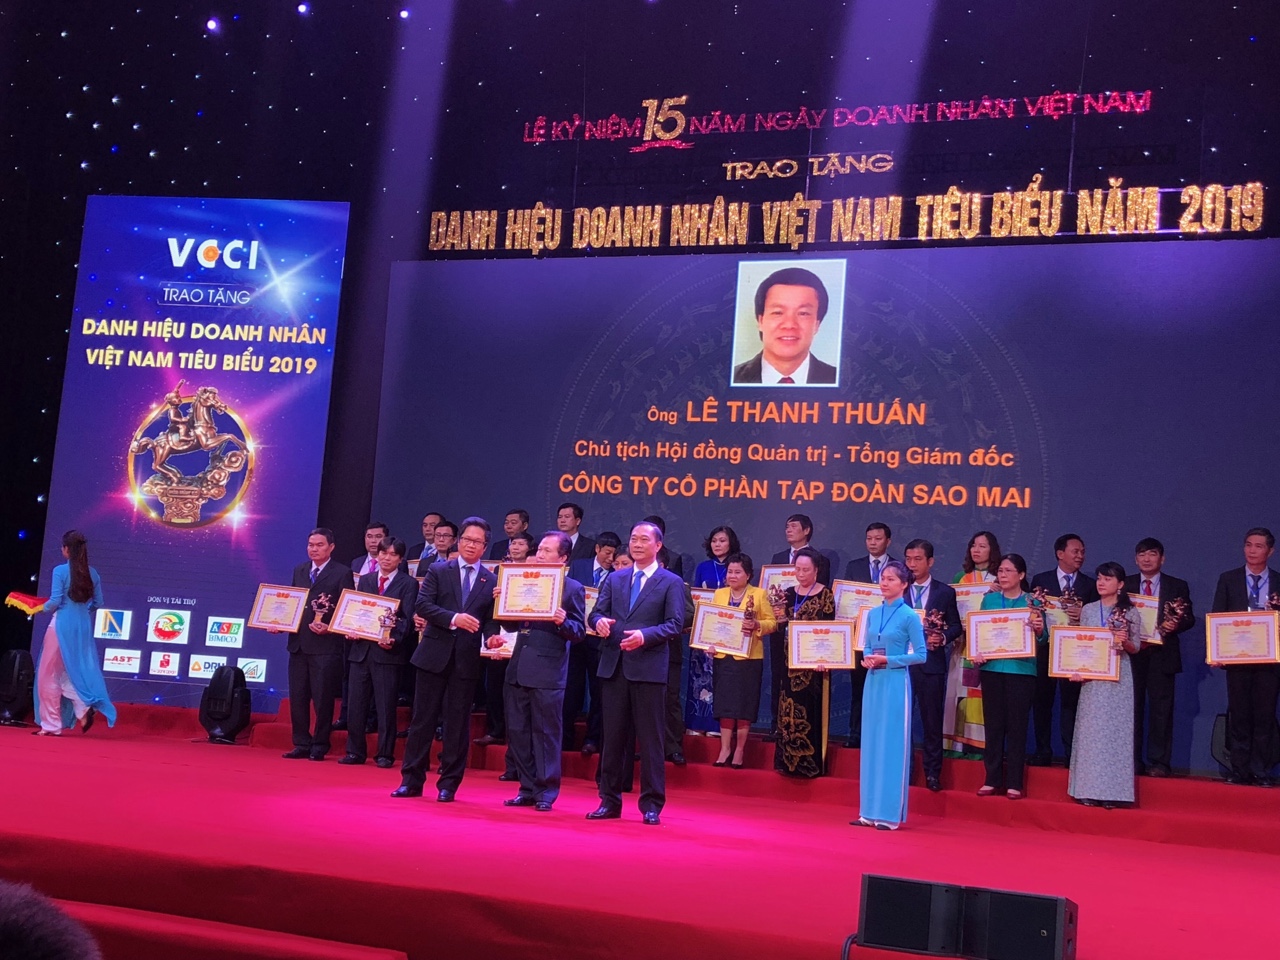 Doanh nhân Việt Nam tiến bước hùng cường